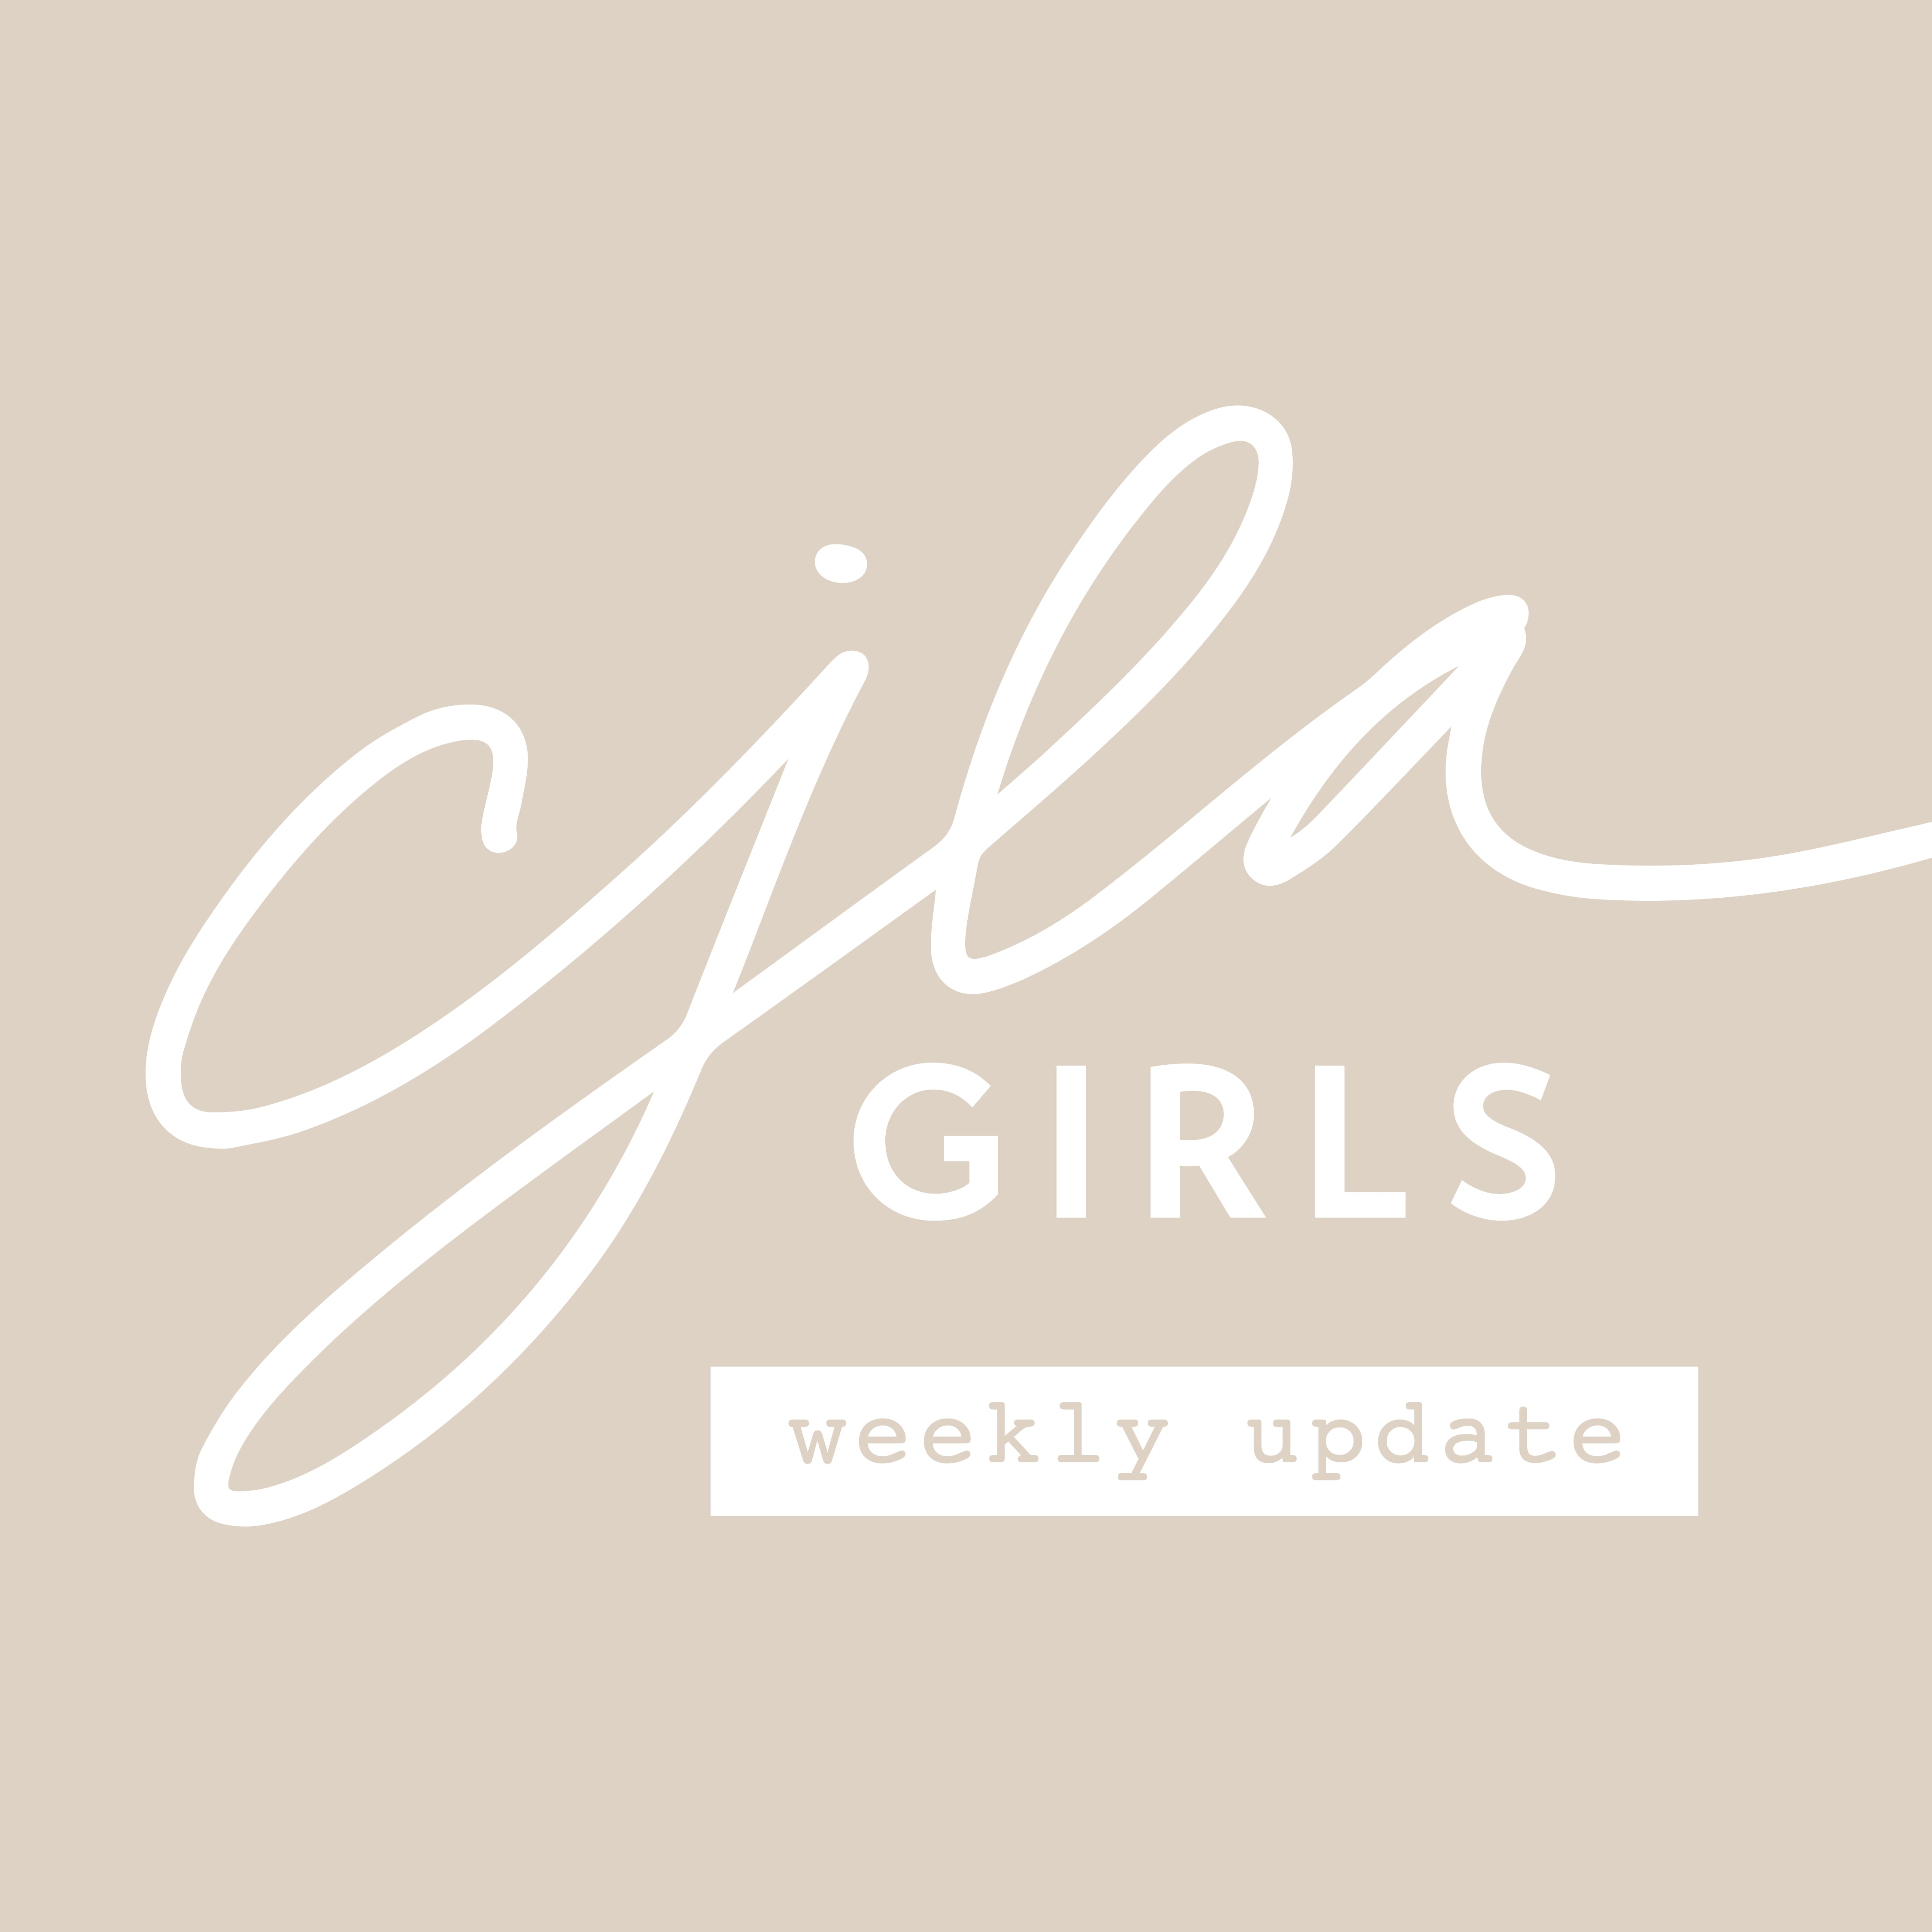 CJLA Girls Weekly Update: May 17-23